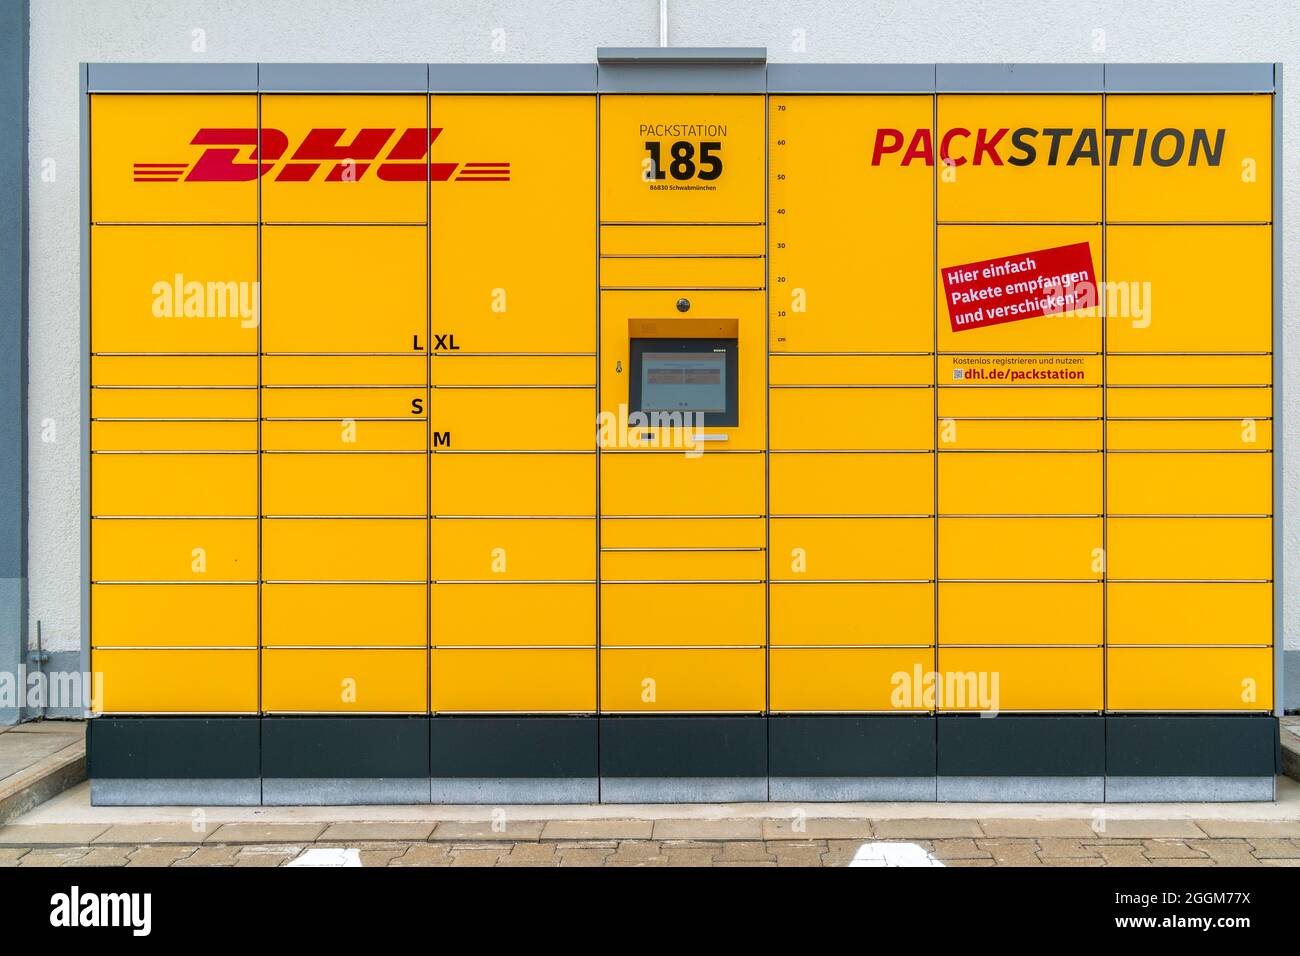 DHL Packstation im Industriegebiet Schwabmünchen Stockfotografie - Alamy